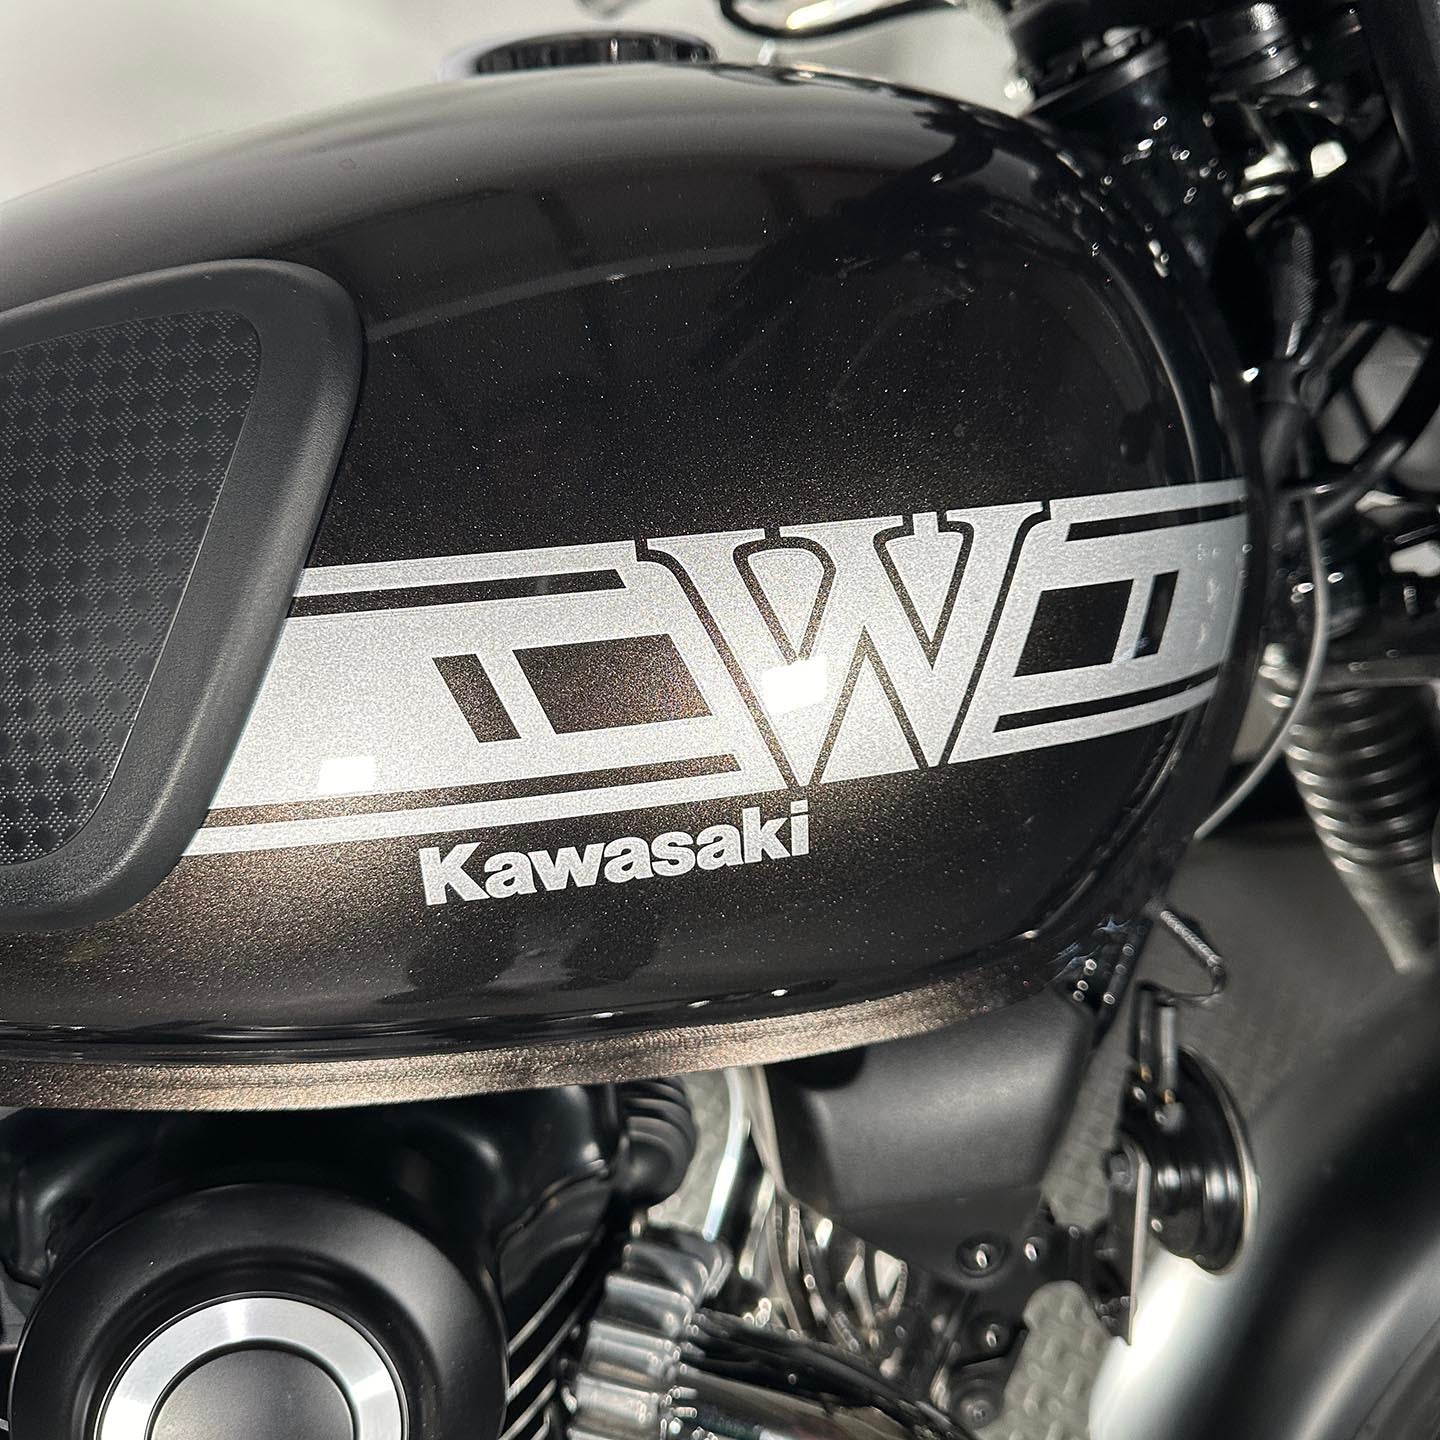 2019 Kawasaki W800 Cafe Abs (3,460 Miles)